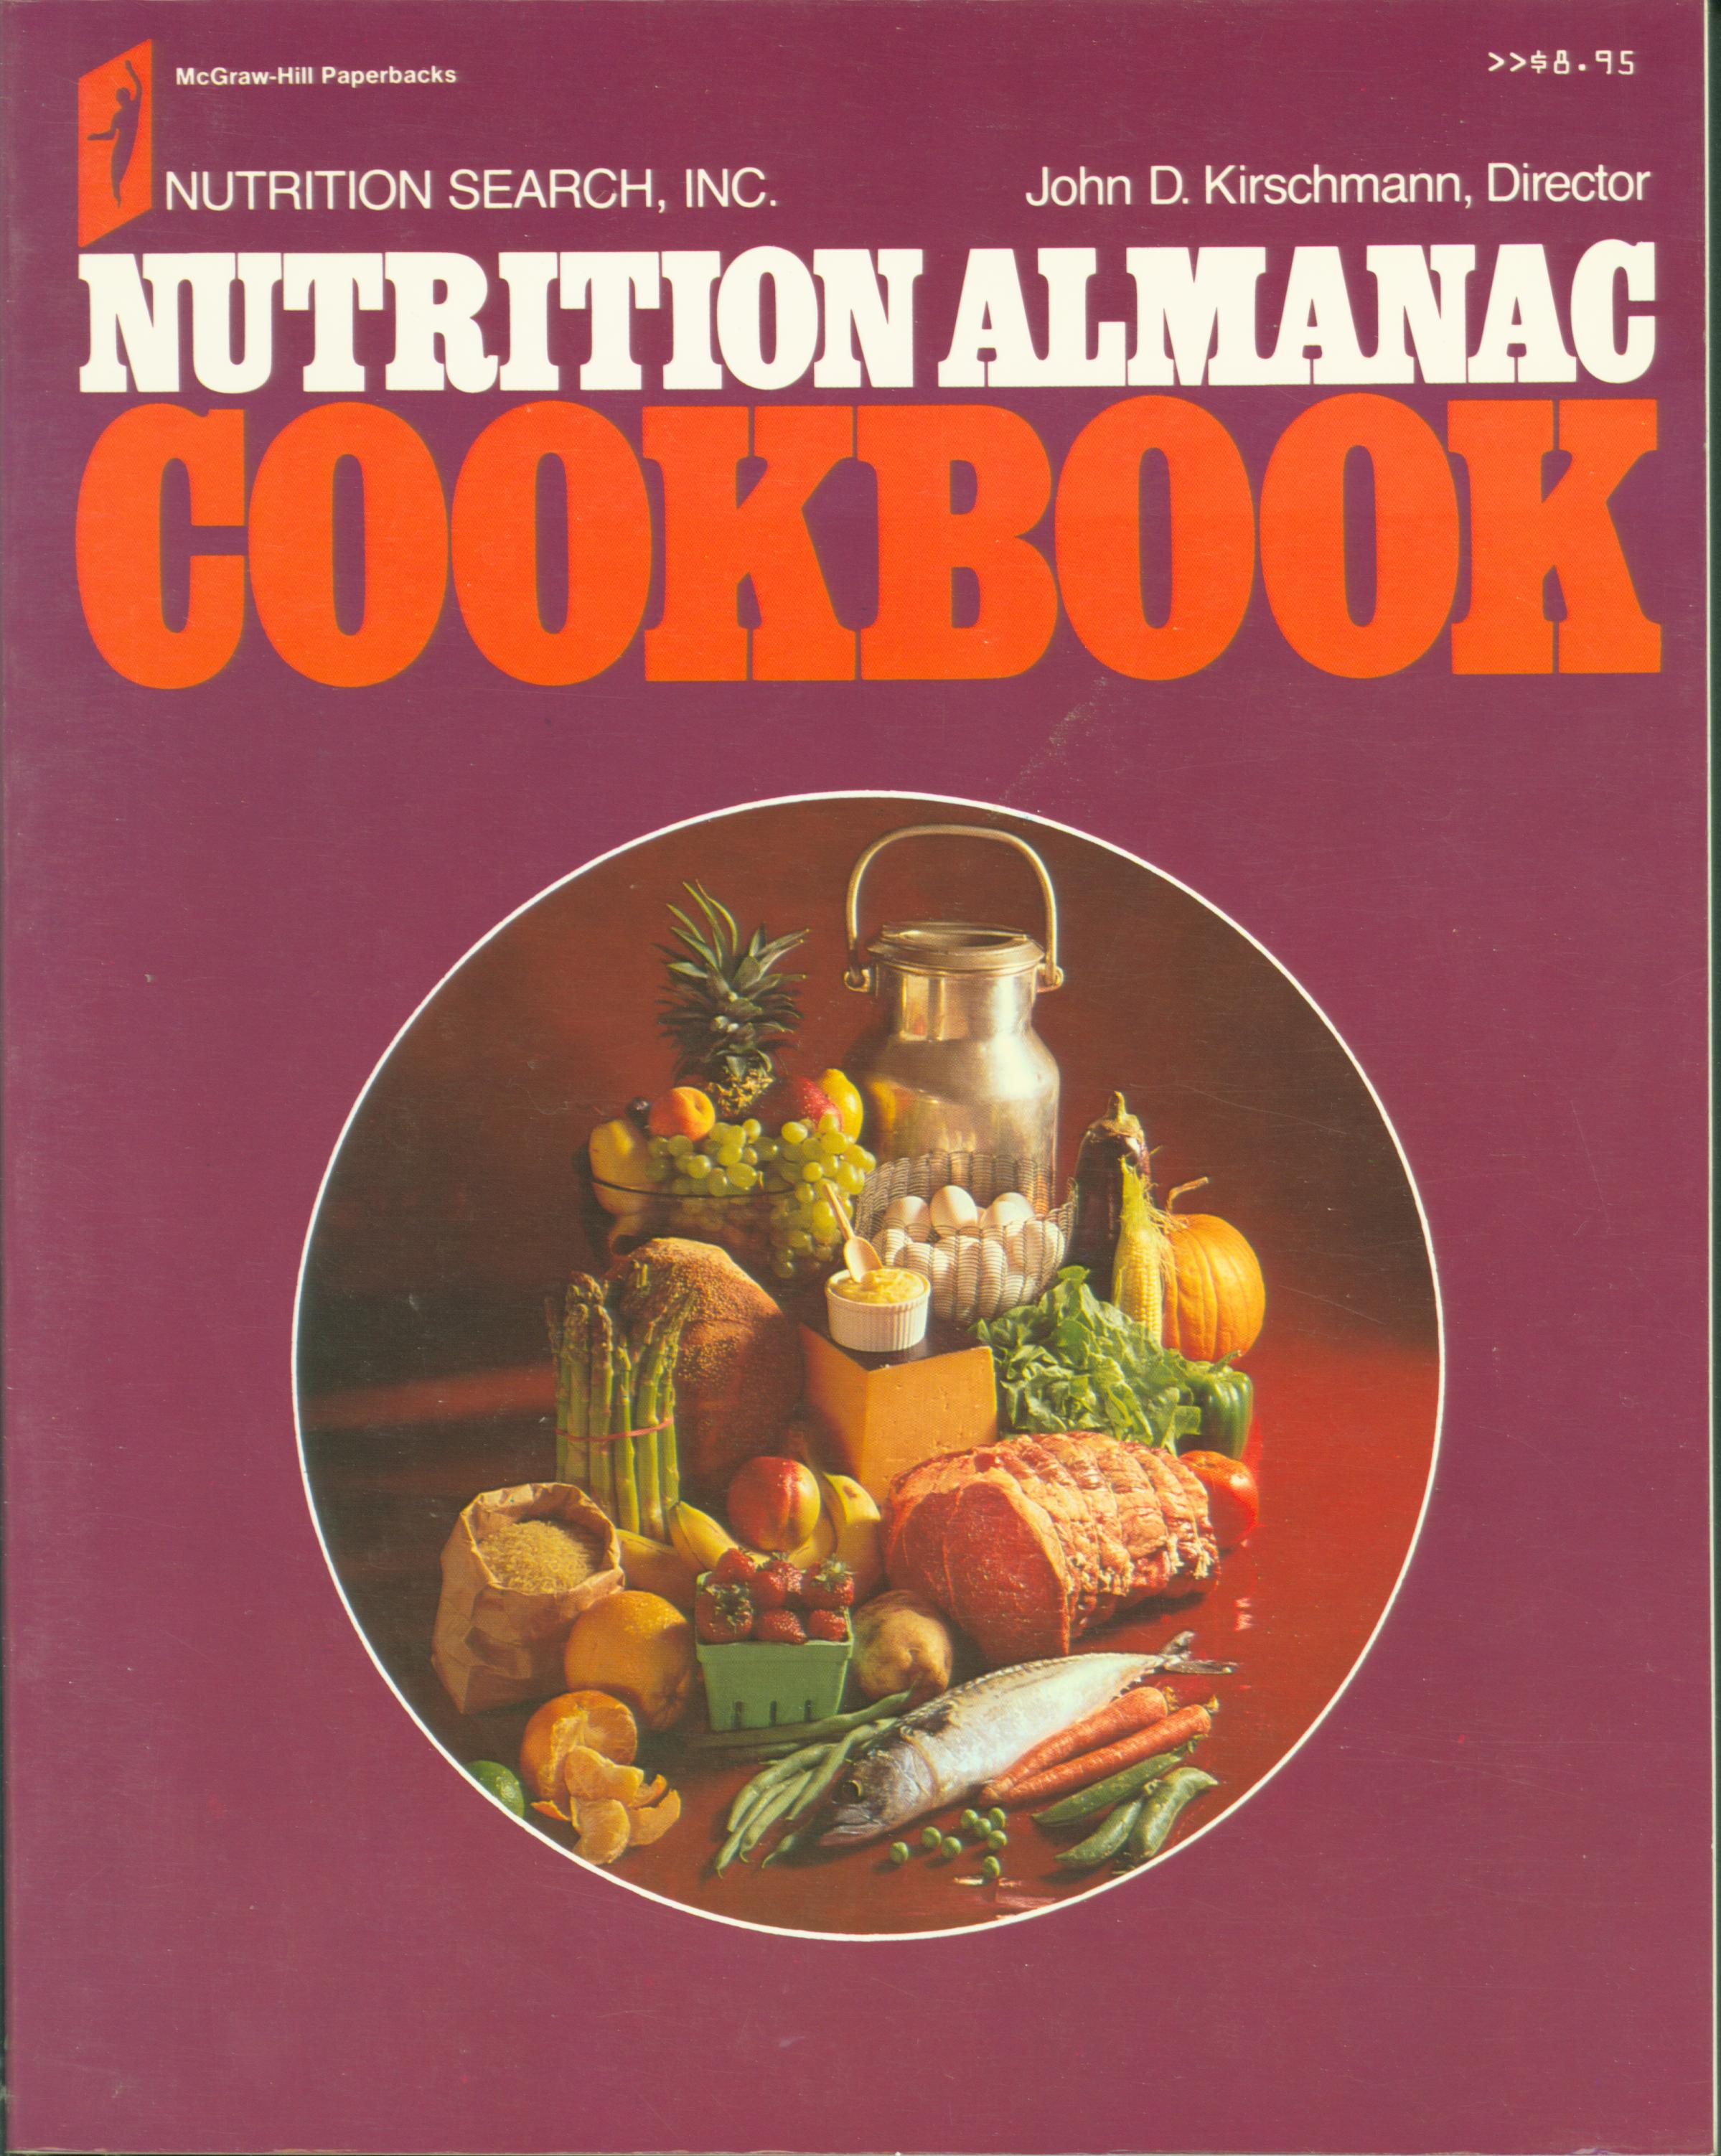 NUTRITION ALMANAC COOKBOOK. 